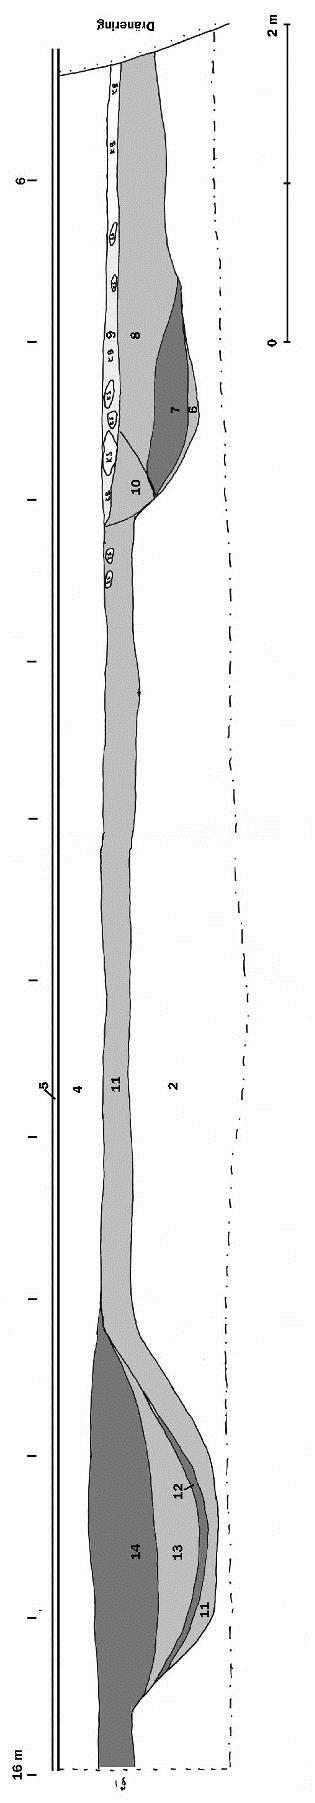 Figur 12, sektion C. 6 = Mörk svartbrun homogen sandig silt. Vattenavsatt, anrikning av kulturlager. 7 = Brungrå finkornig sand med inslag av kol och grusstråk. Vattenpåverkad, urlakat kulturlager.